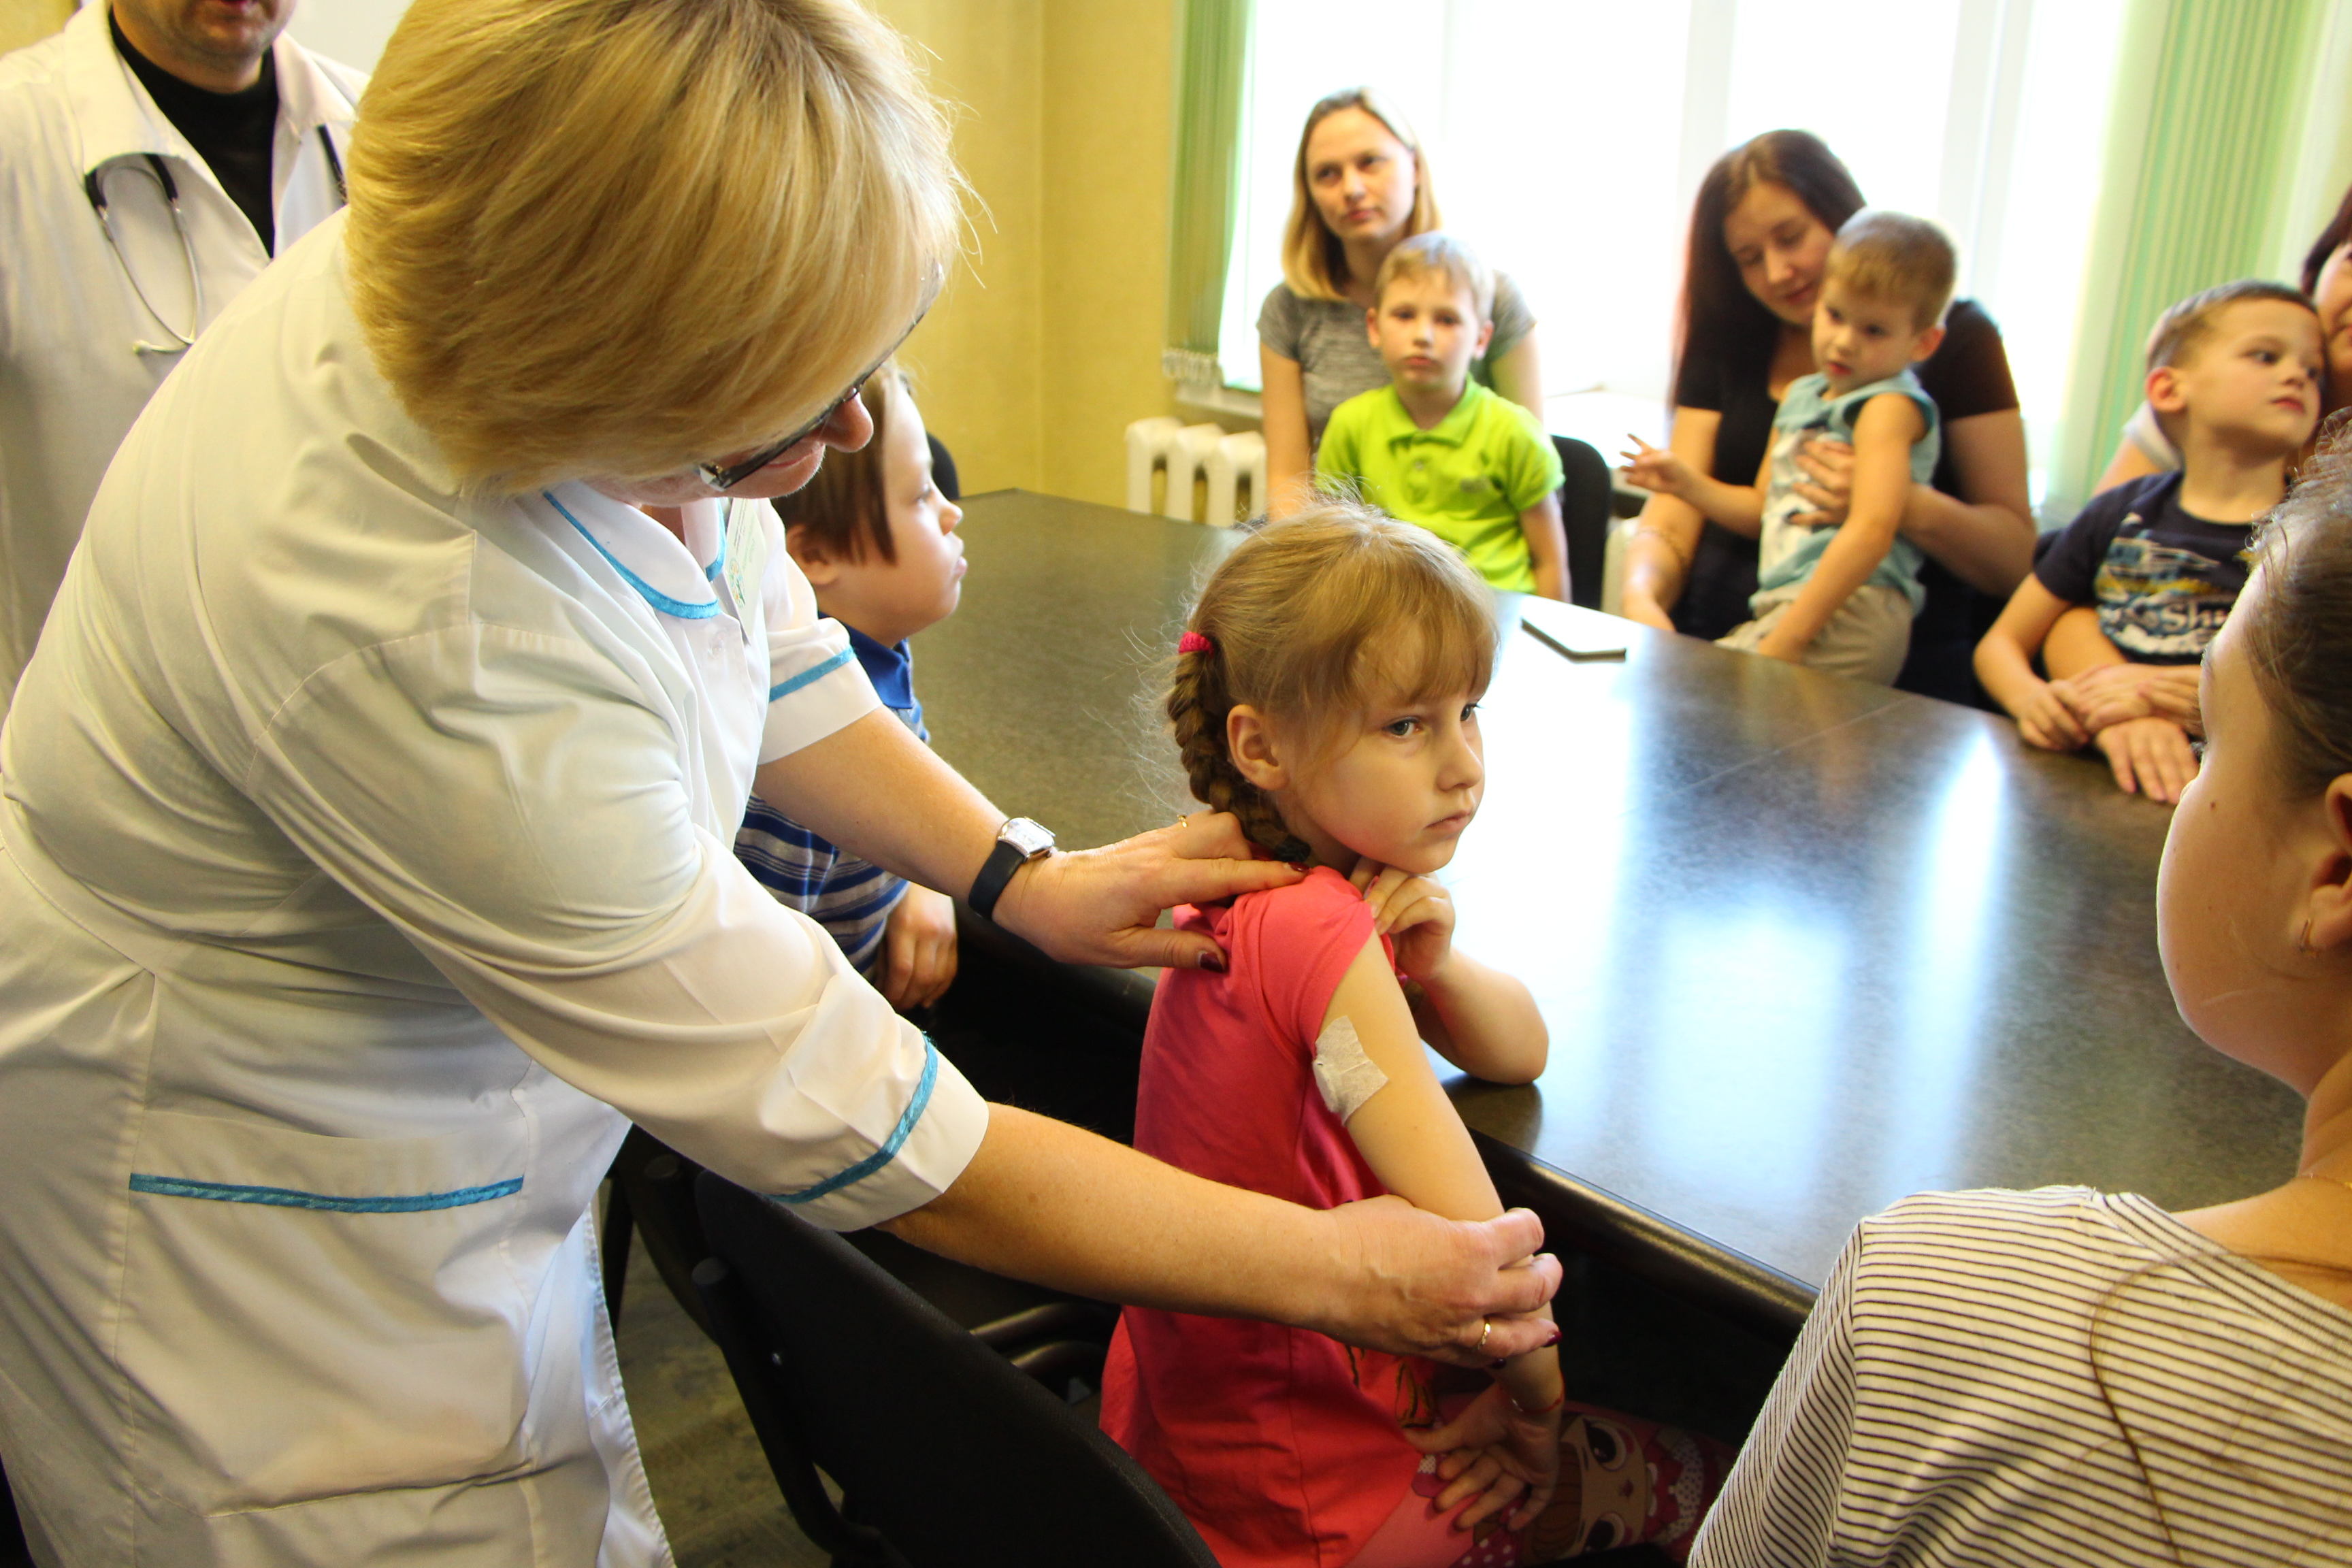 14.11.19 Областной центр детской эндокринологии открылся на базе ОДКБ.jpg